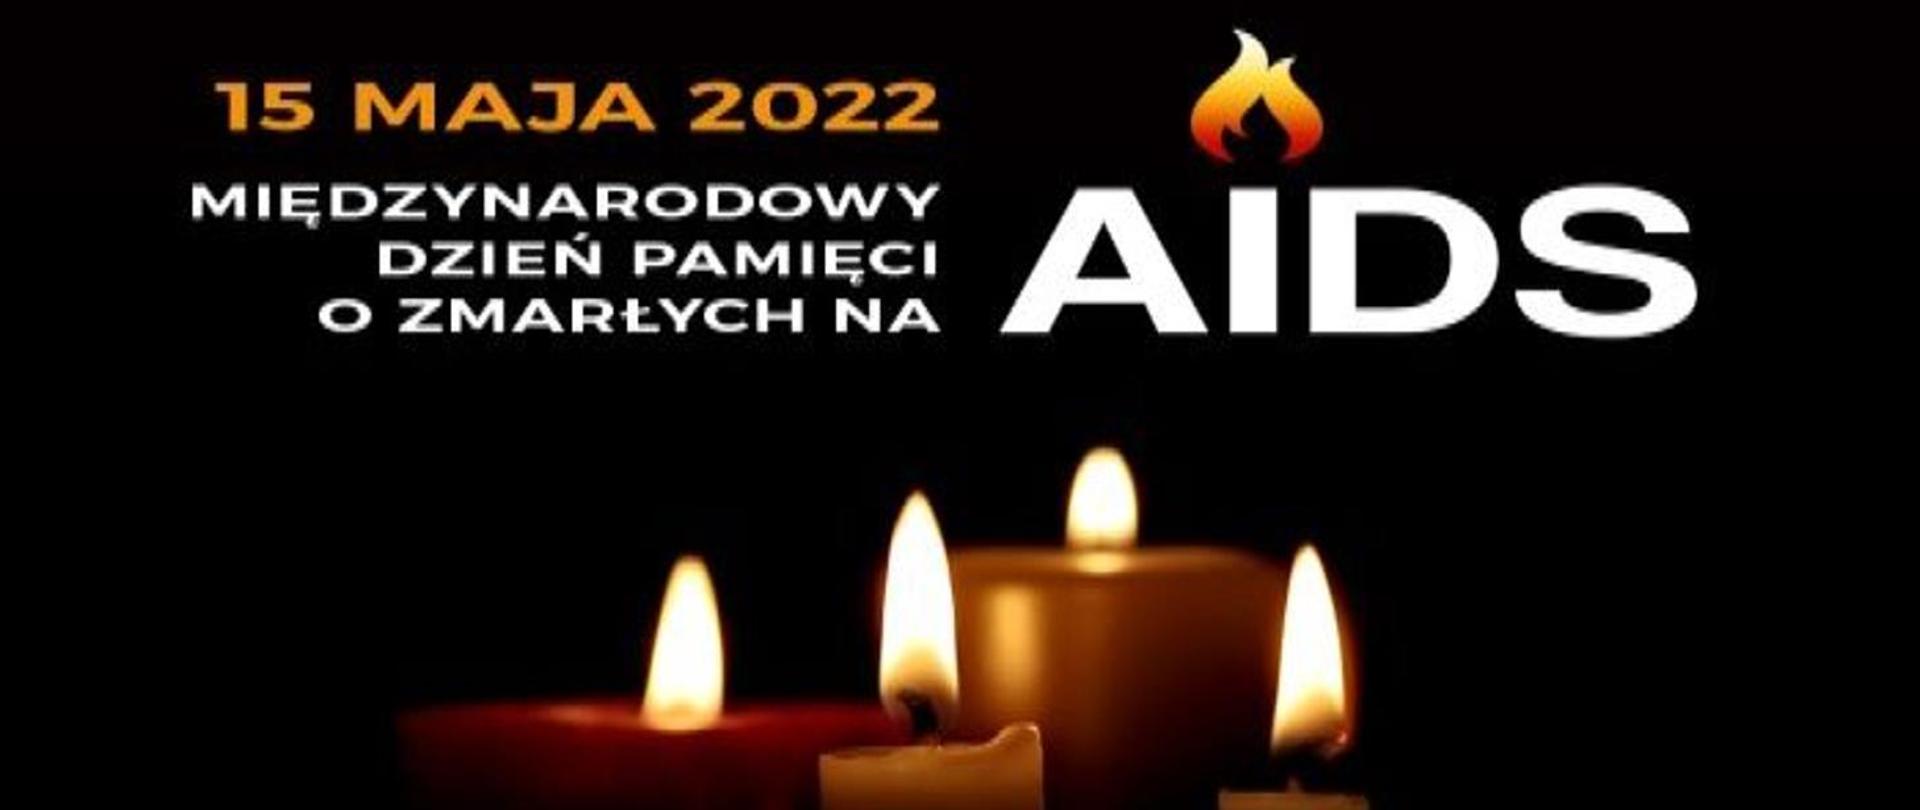 Międzynarodowy Dzień Pamięci o zmarłych na AIDS